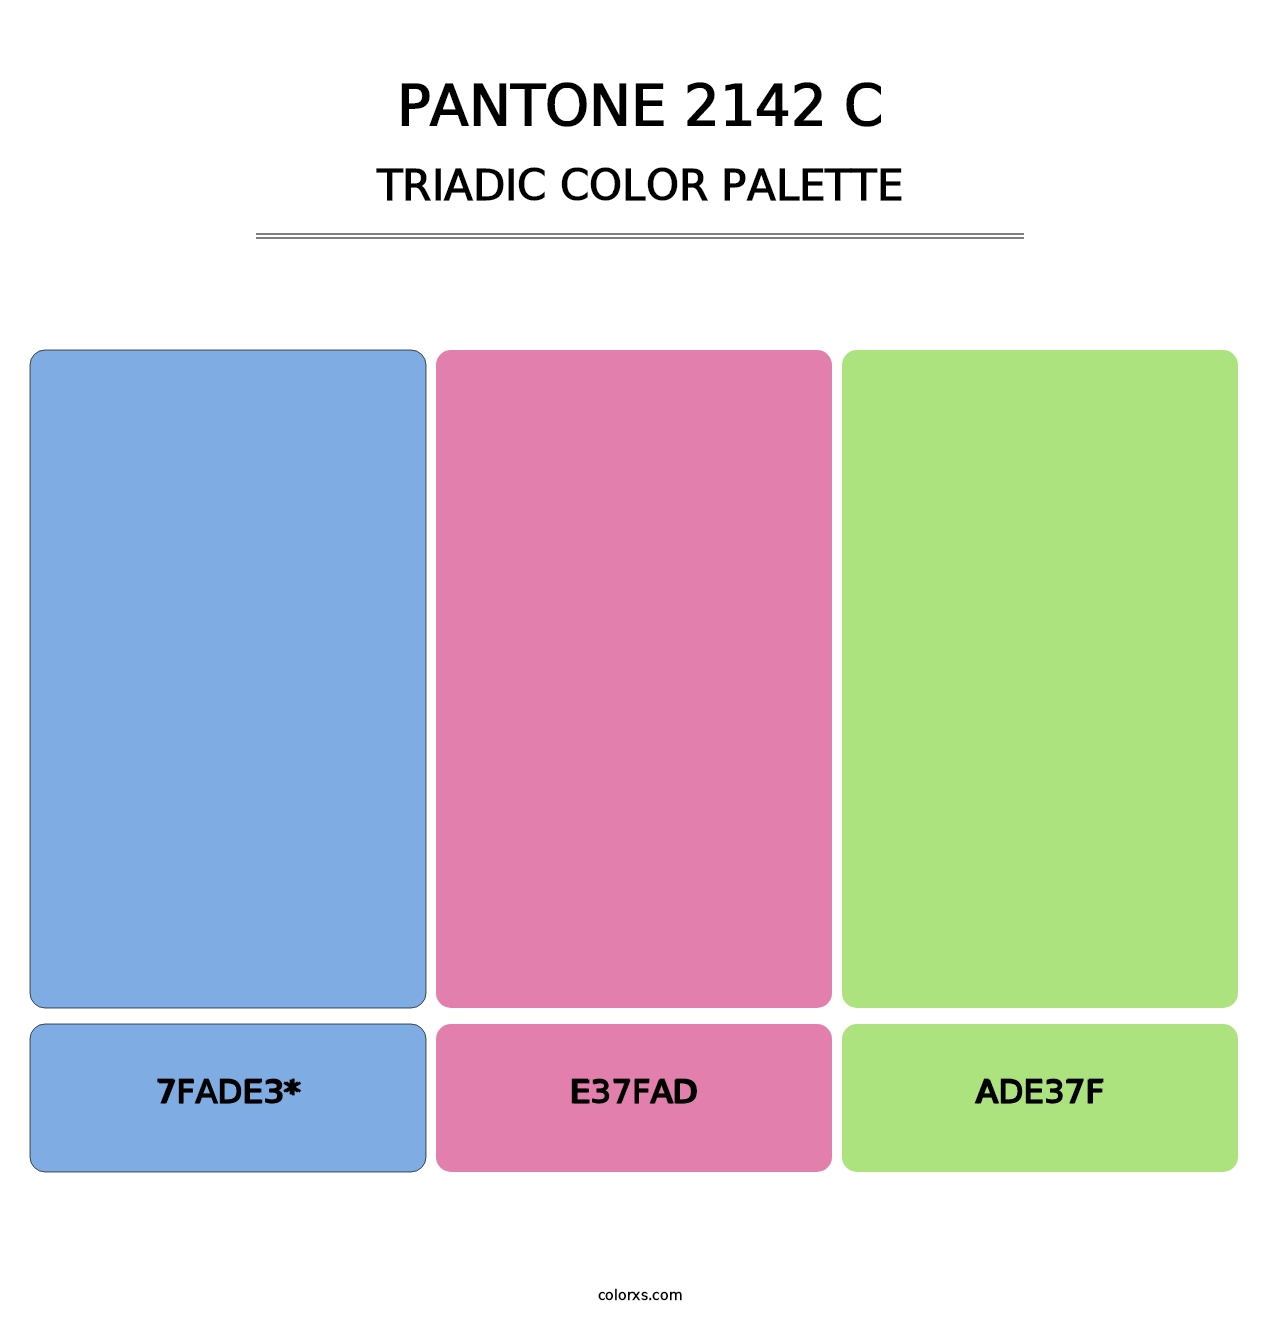 PANTONE 2142 C - Triadic Color Palette